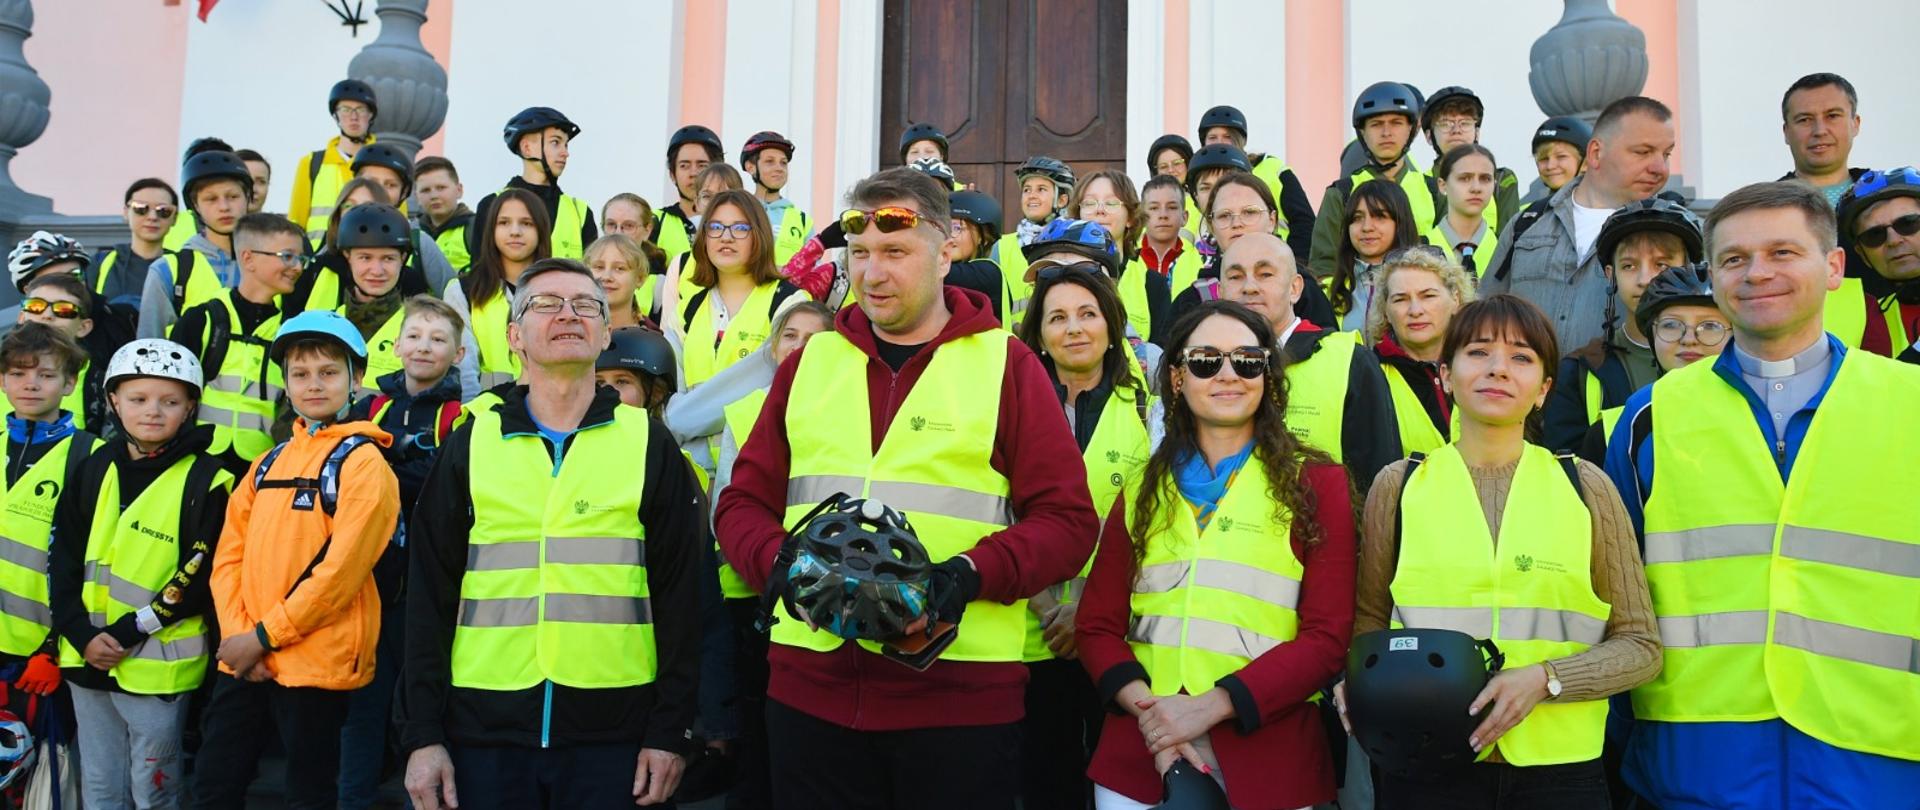 Minister Czarnek w żółtej kamizelce stoi pośrodku dużej grupy osób w takich samych kamizelkach, w tle budynek z biało-różowymi ścianami.